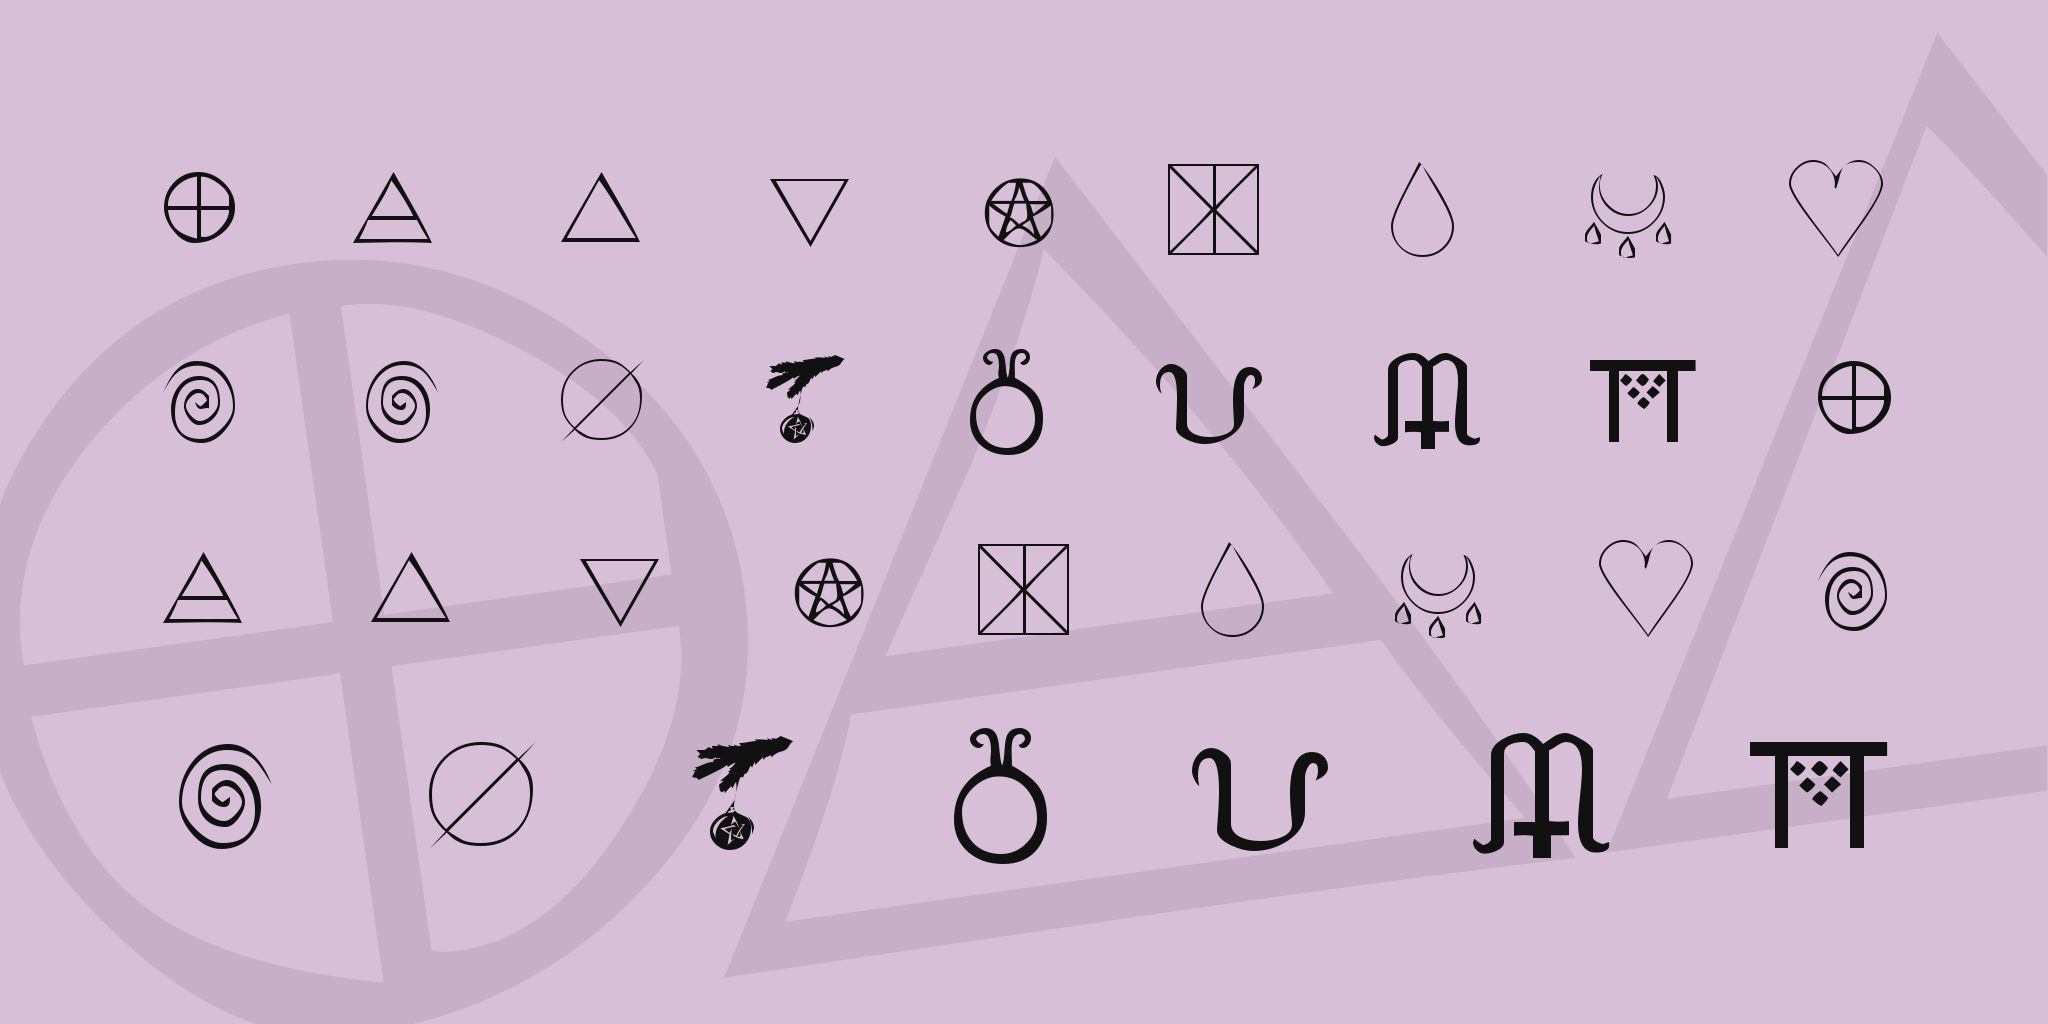 Kr Wiccan Symbols